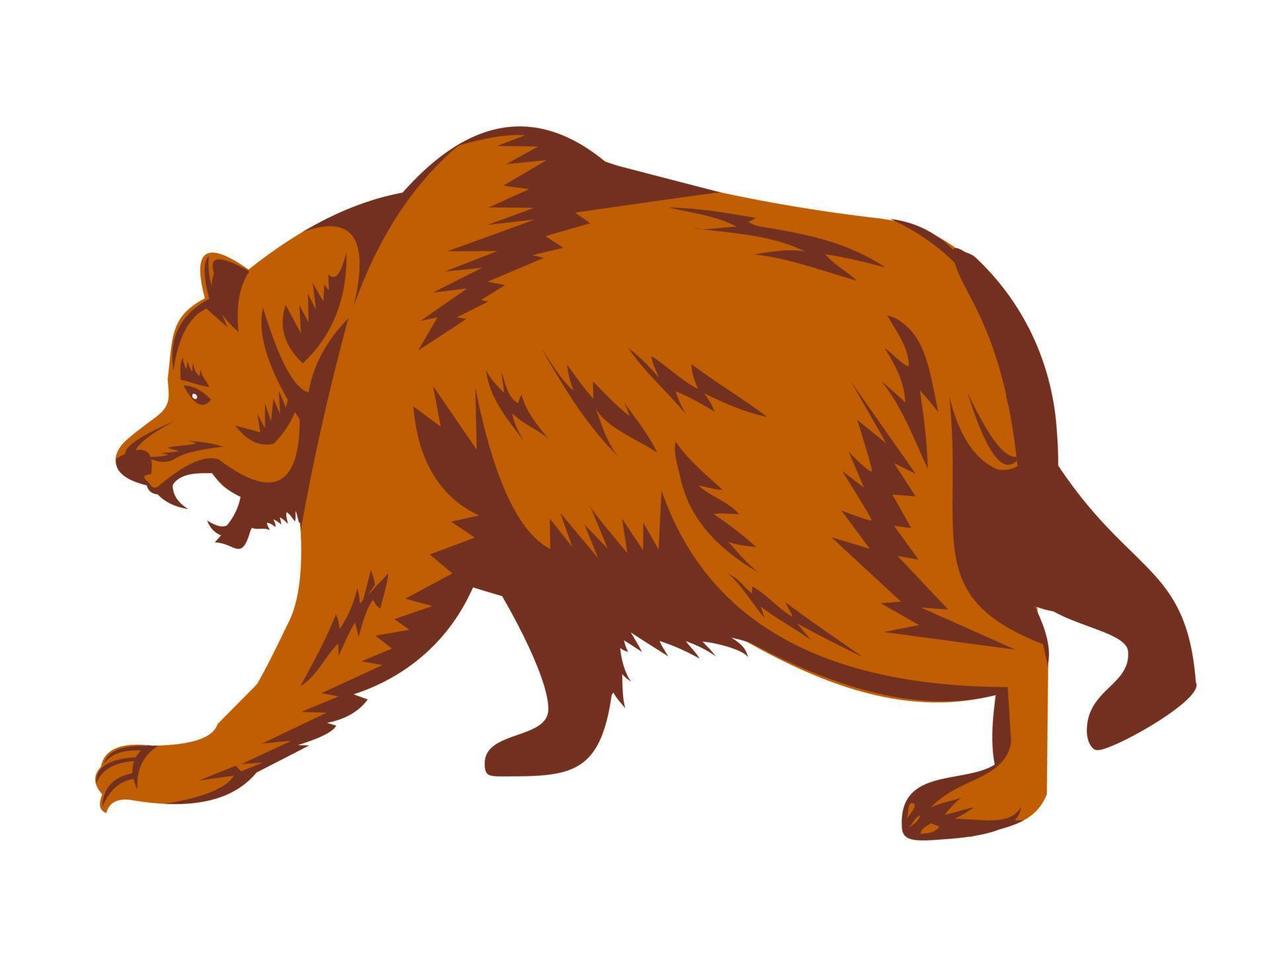 oso grizzly enojado o oso pardo norteamericano a punto de atacar al estilo de grabado retro lateral vector